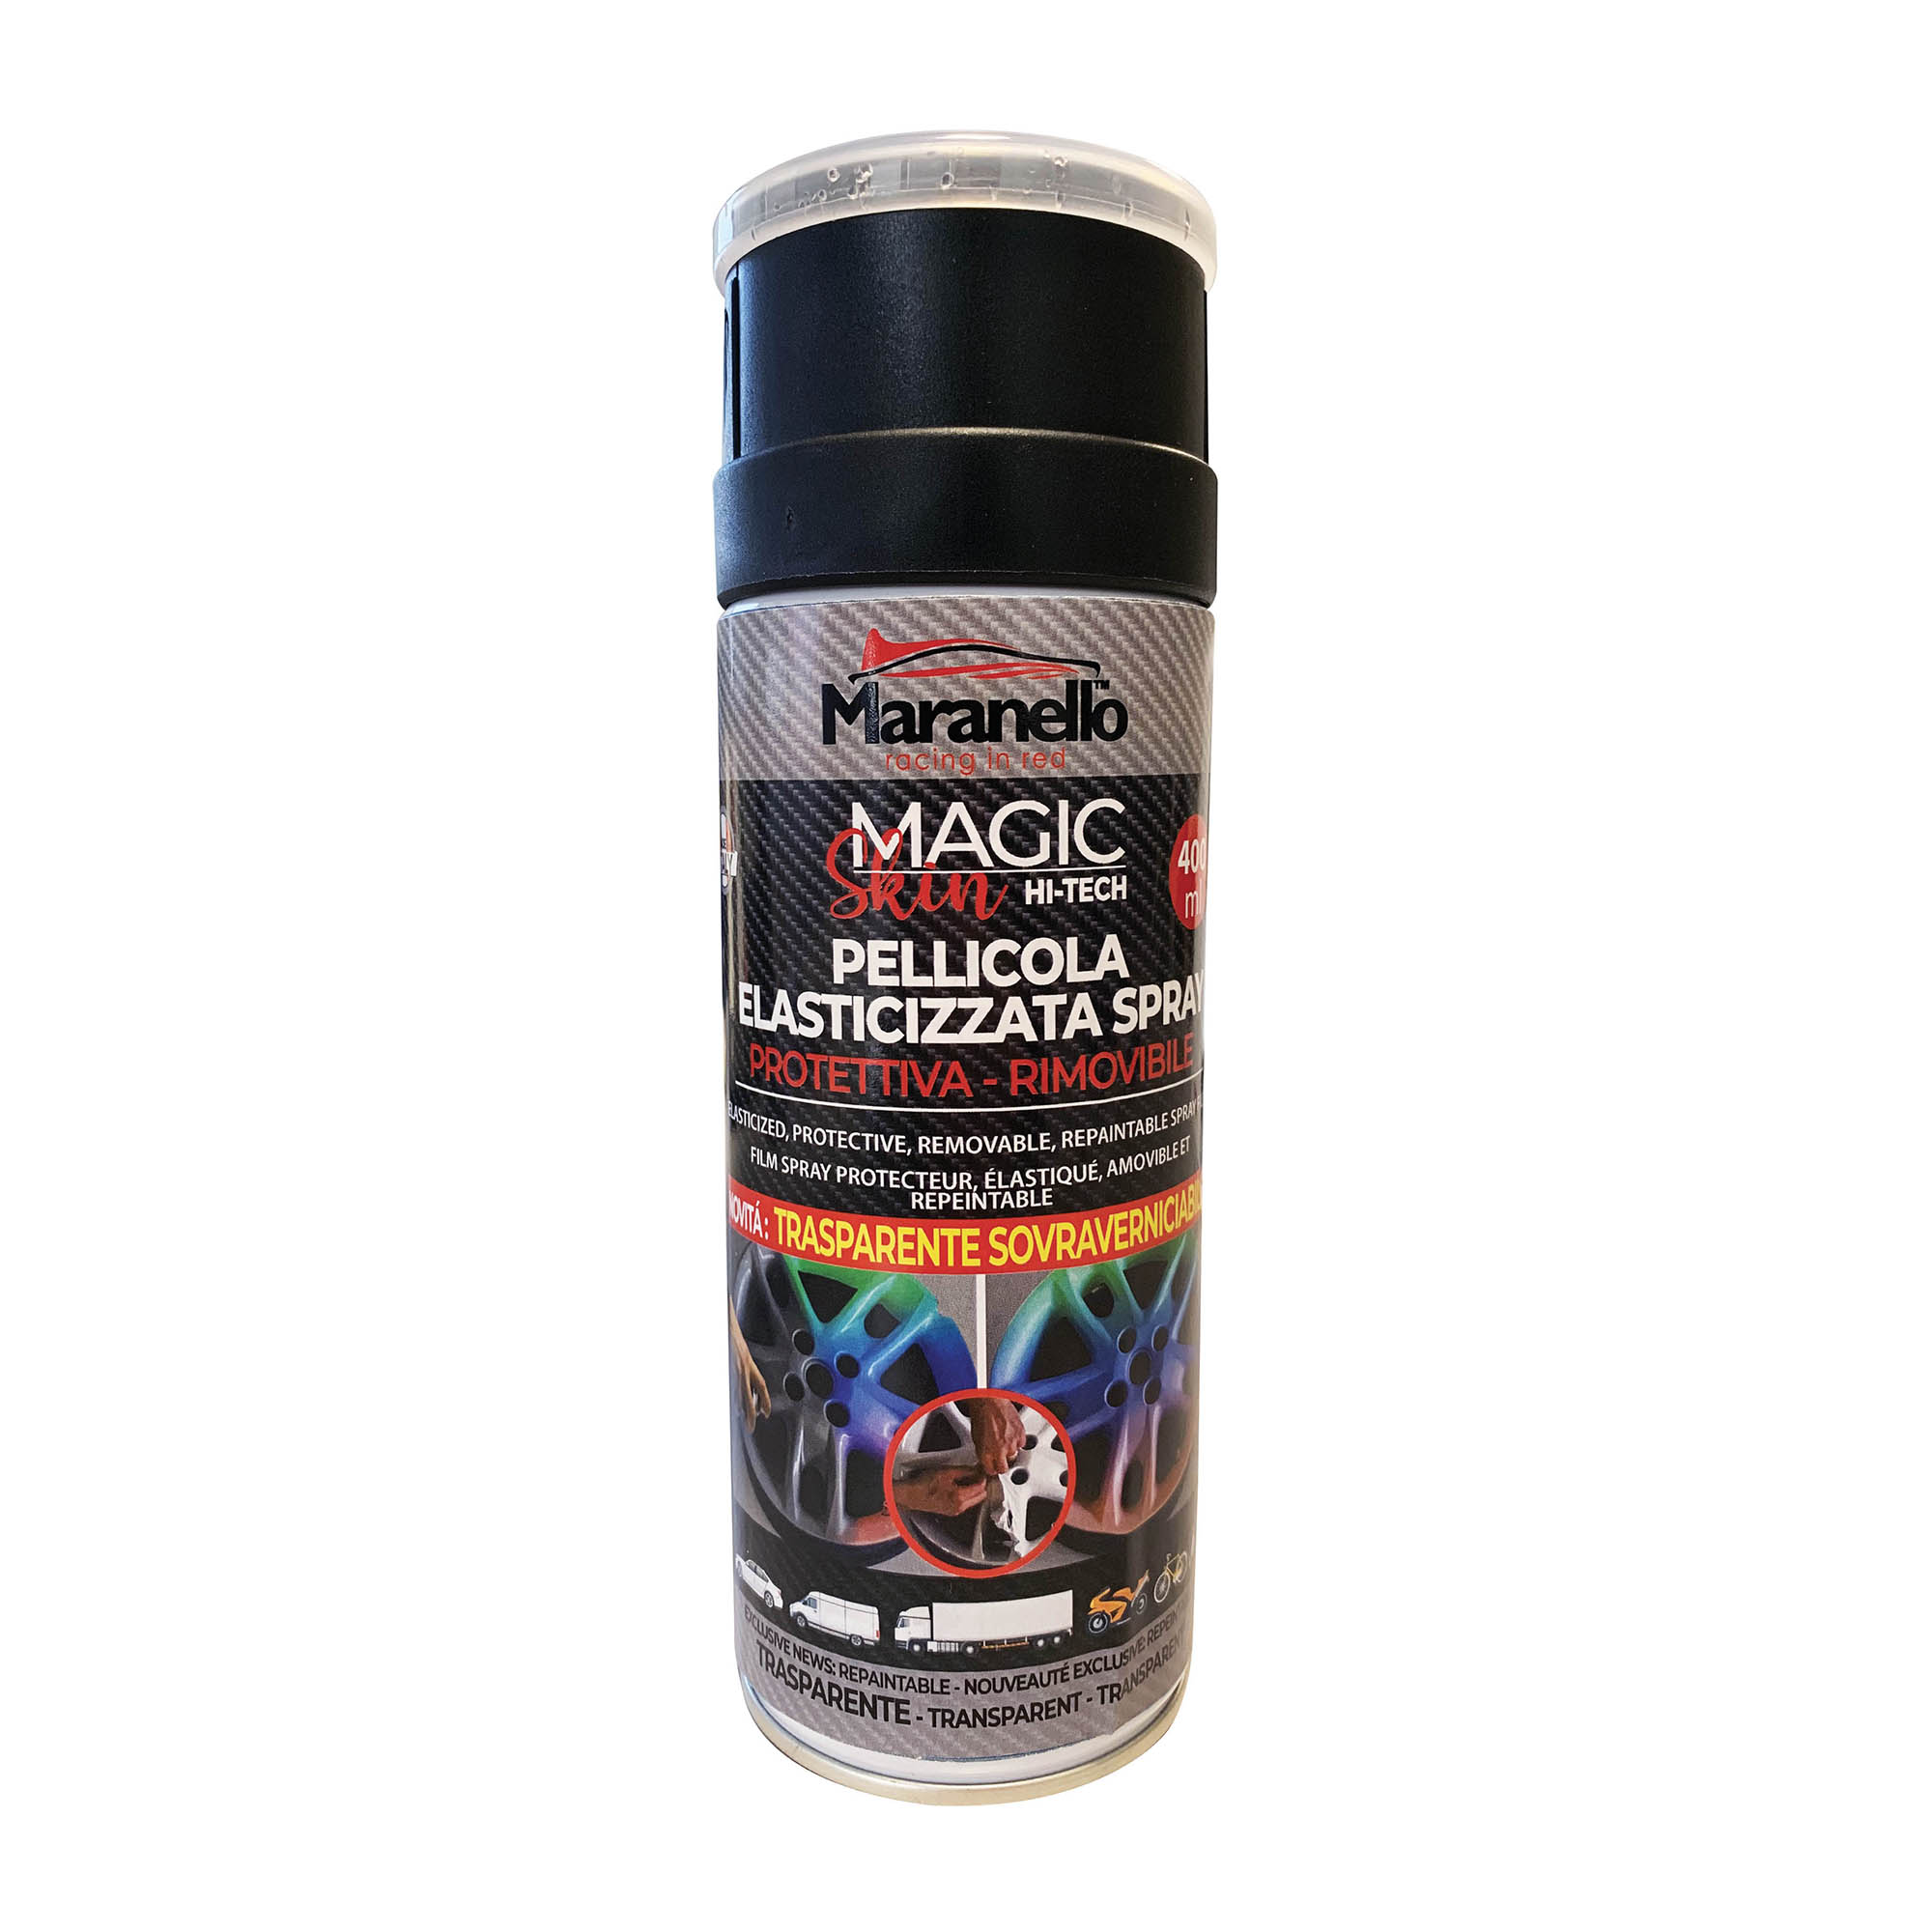 Pellicola spray rimovibile trasparente sovraverniciabile Maranello - MAGIC  SKIN – DAC Srl